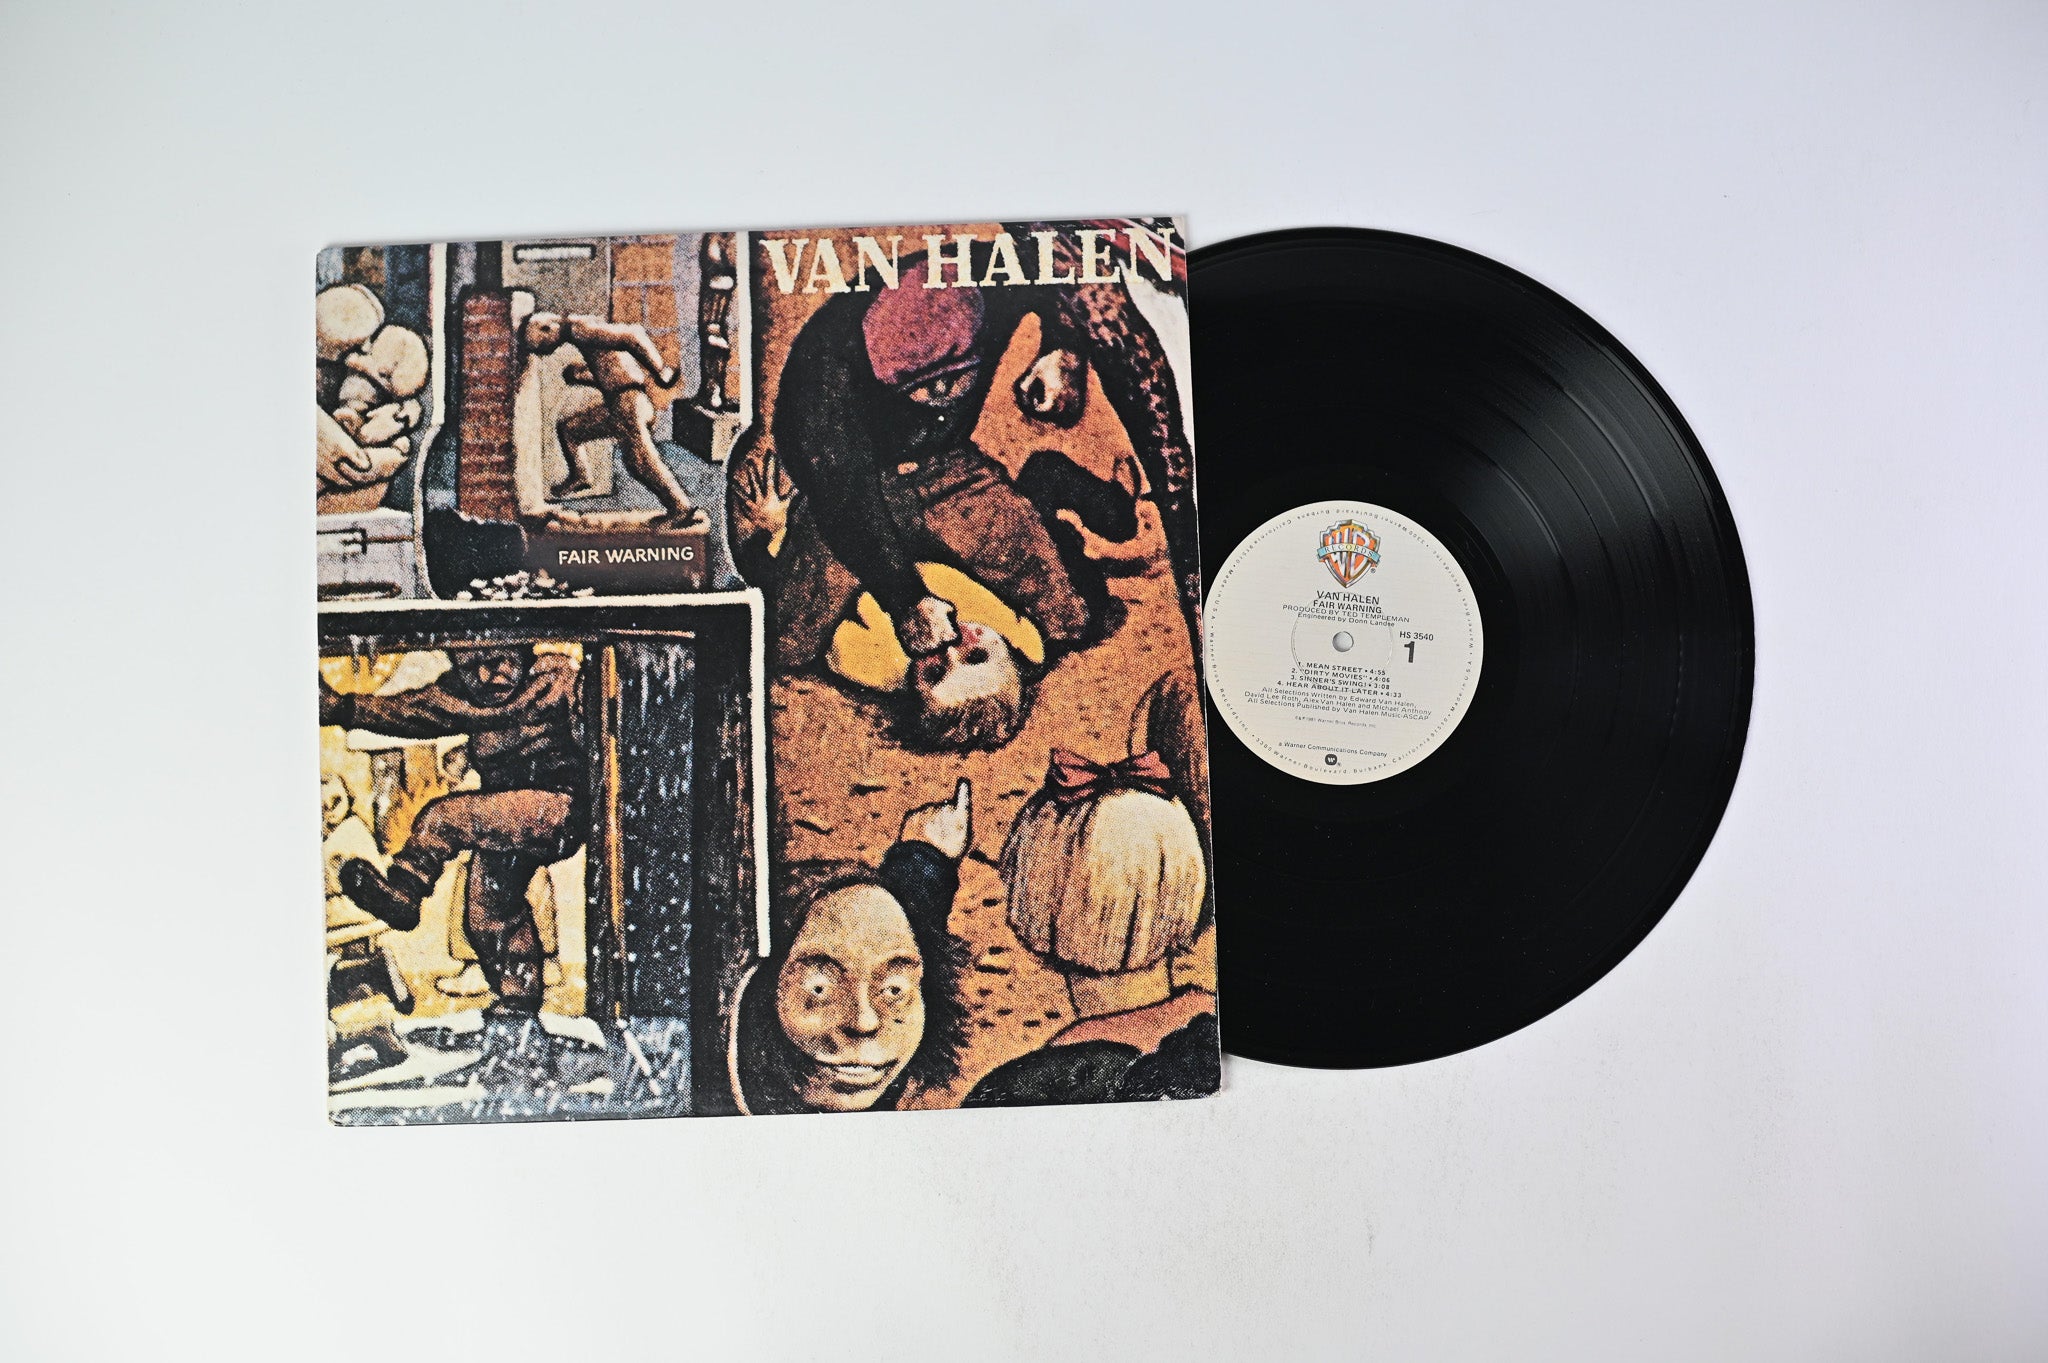 Van Halen - Fair Warning on Warner Bros. Records